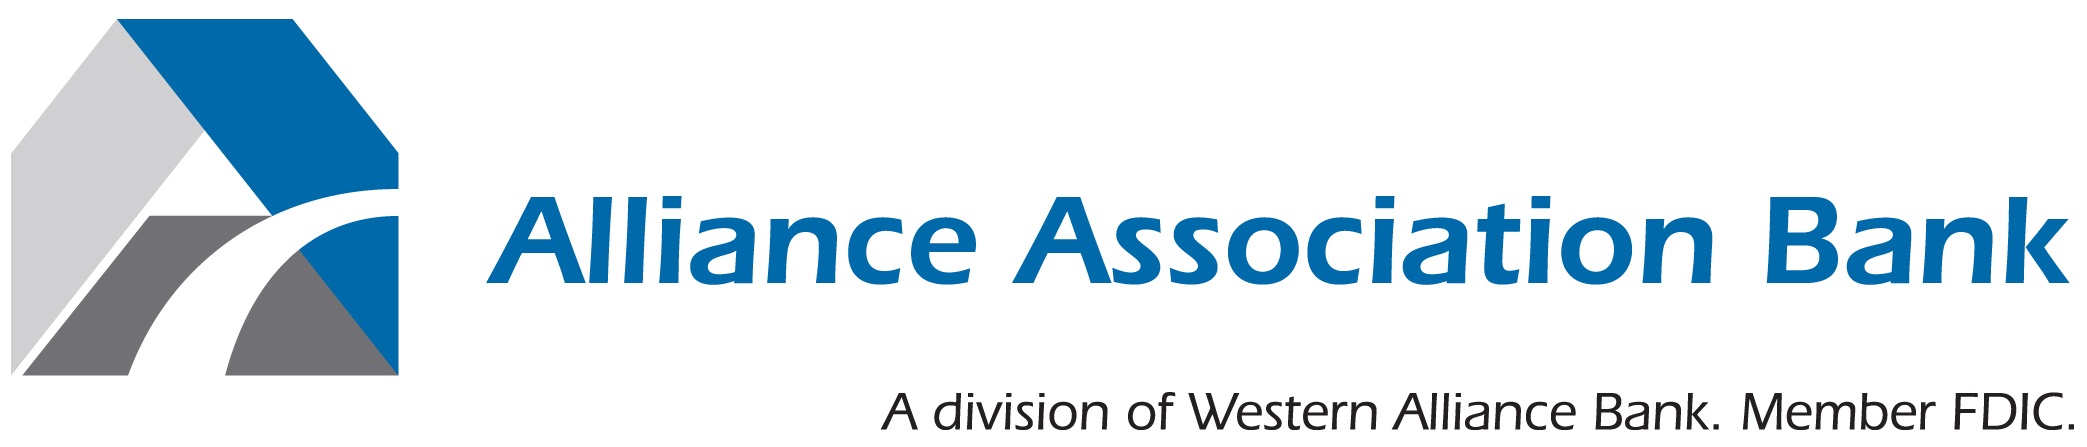 alliance bank association